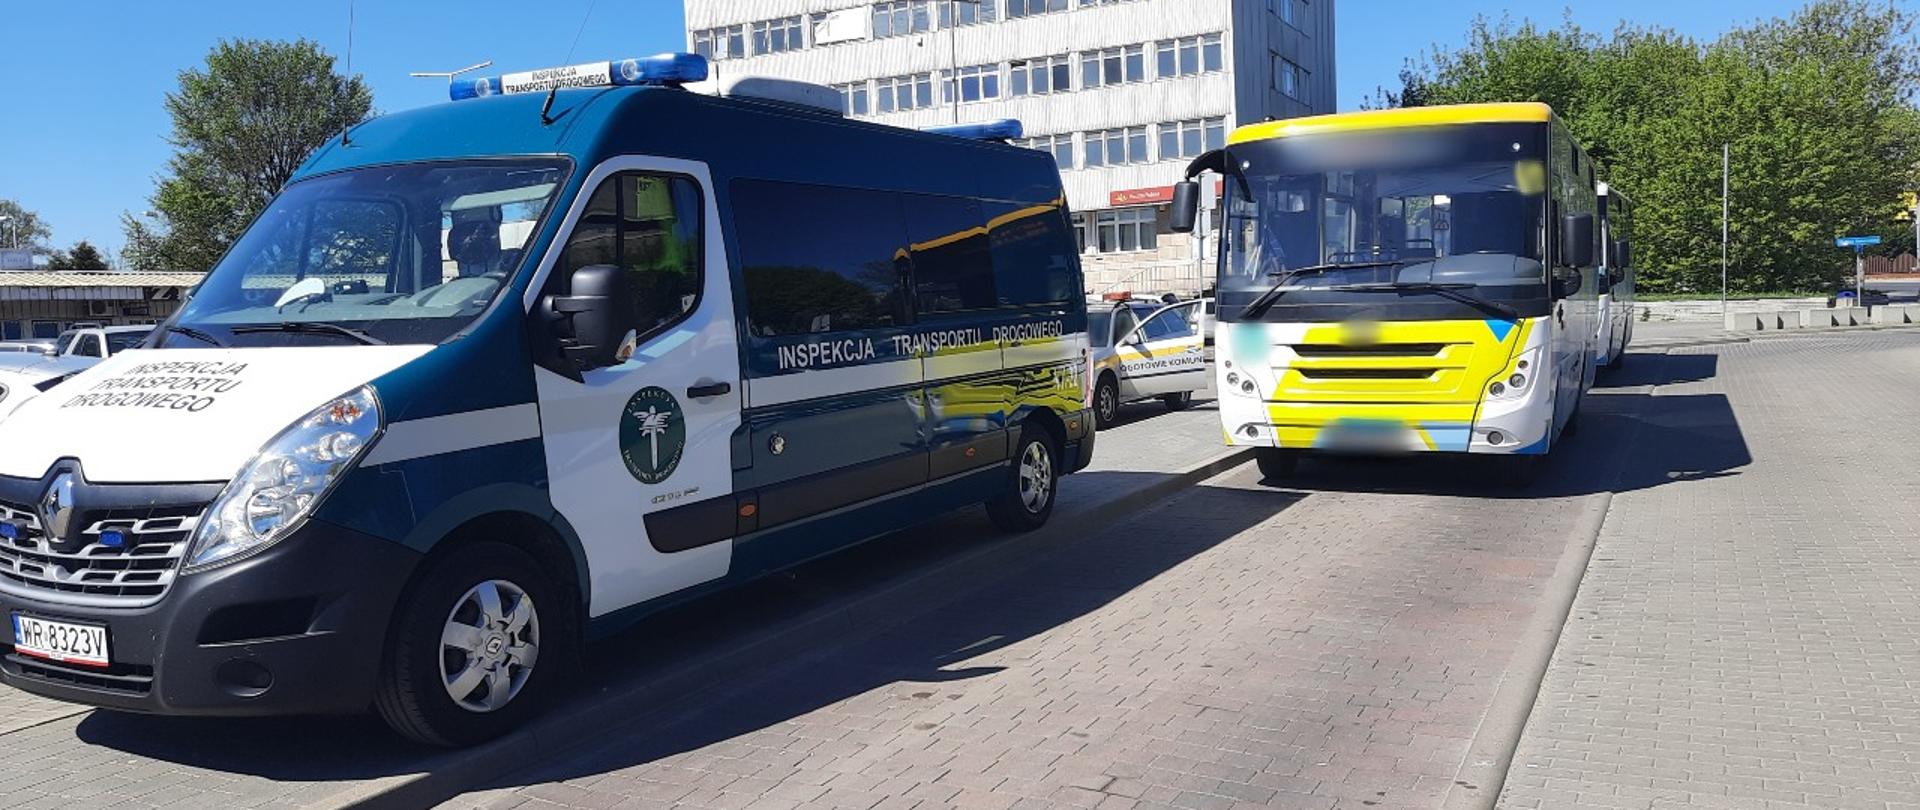 Od lewej strony: oznakowany radiowóz ITD i dwa kontrolowane autobusy komunikacji miejskiej w Mińsku Mazowieckim.